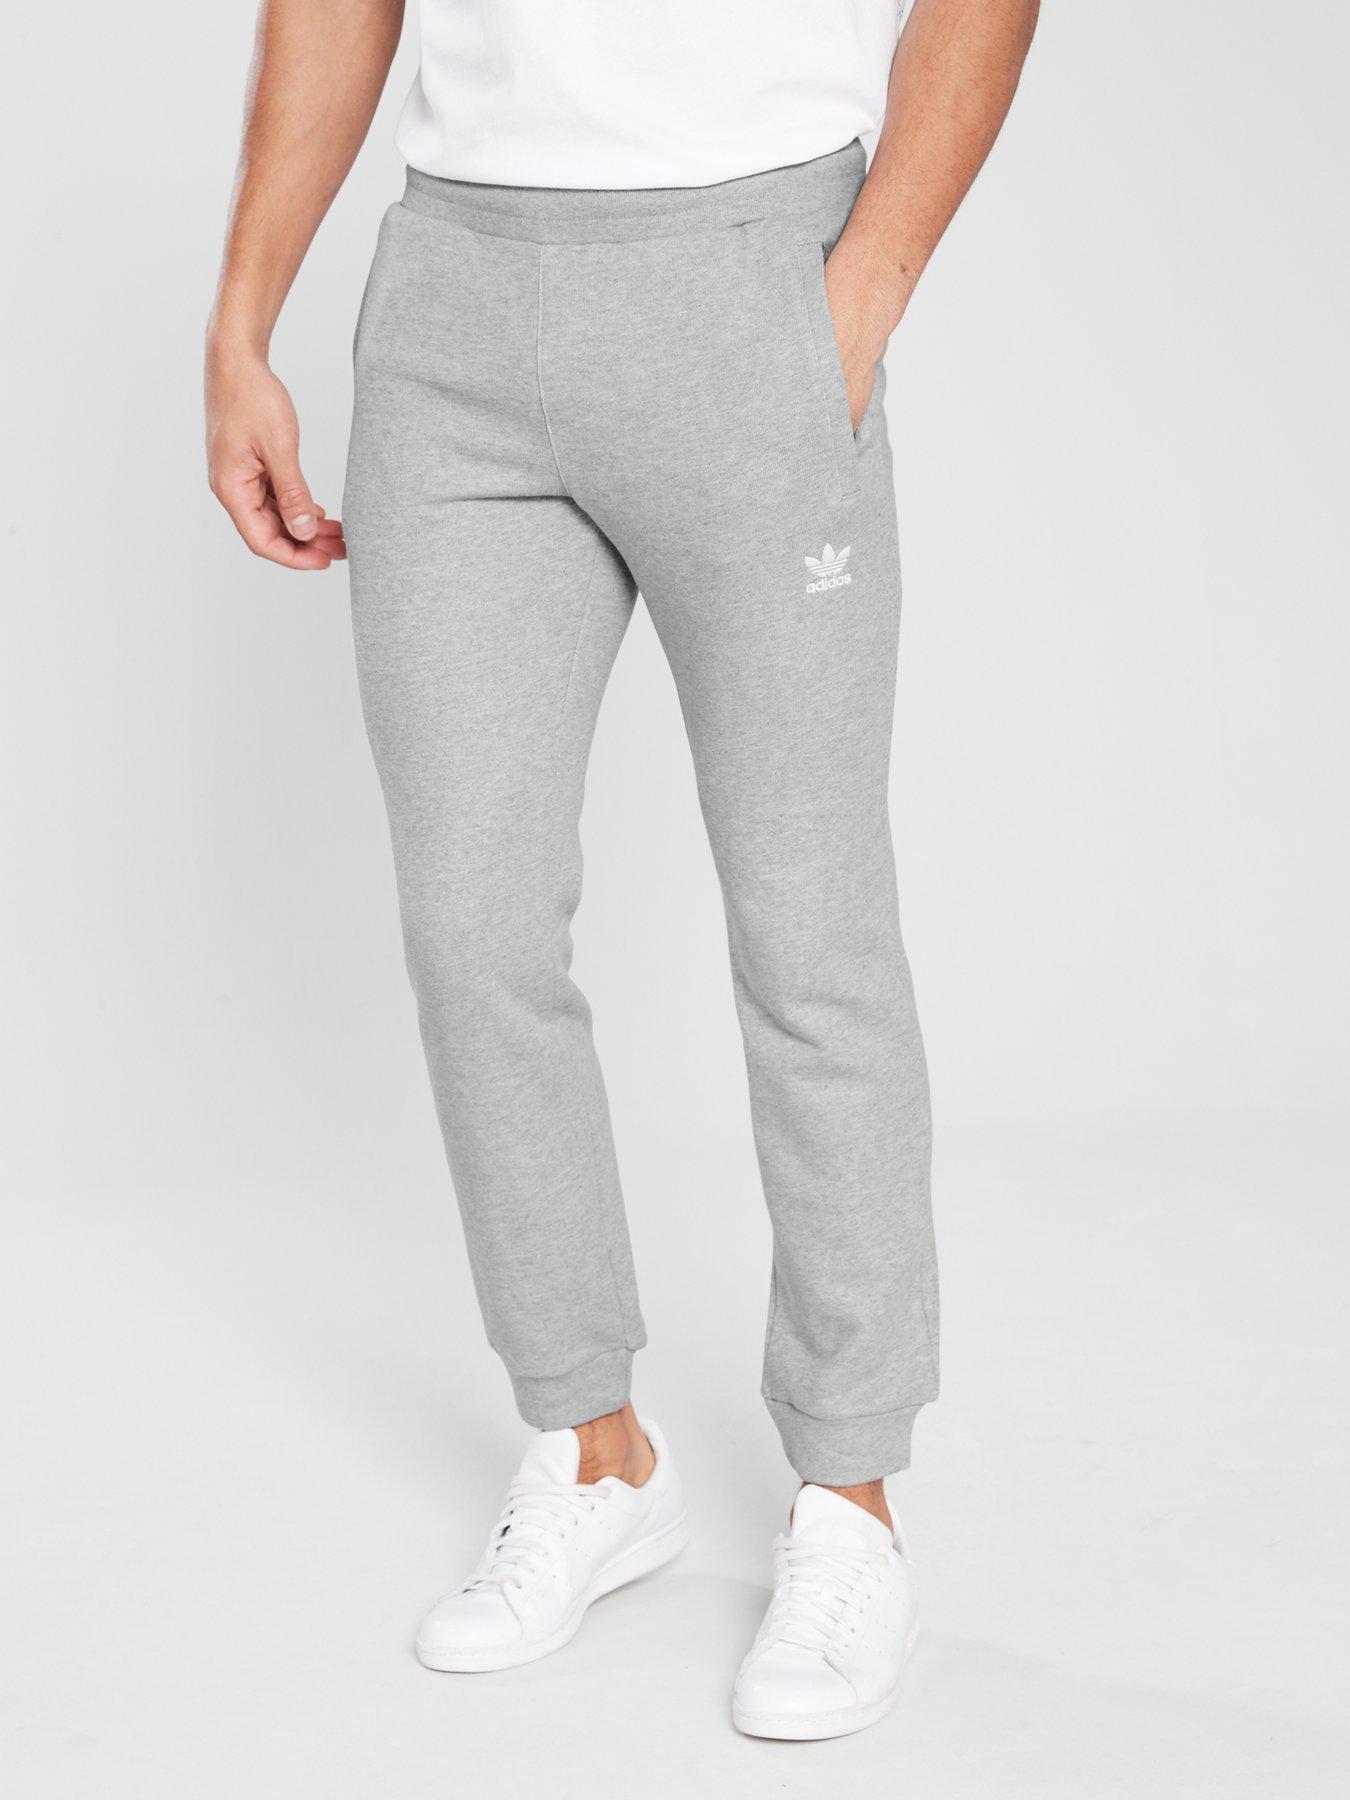 adidas track pants mens grey